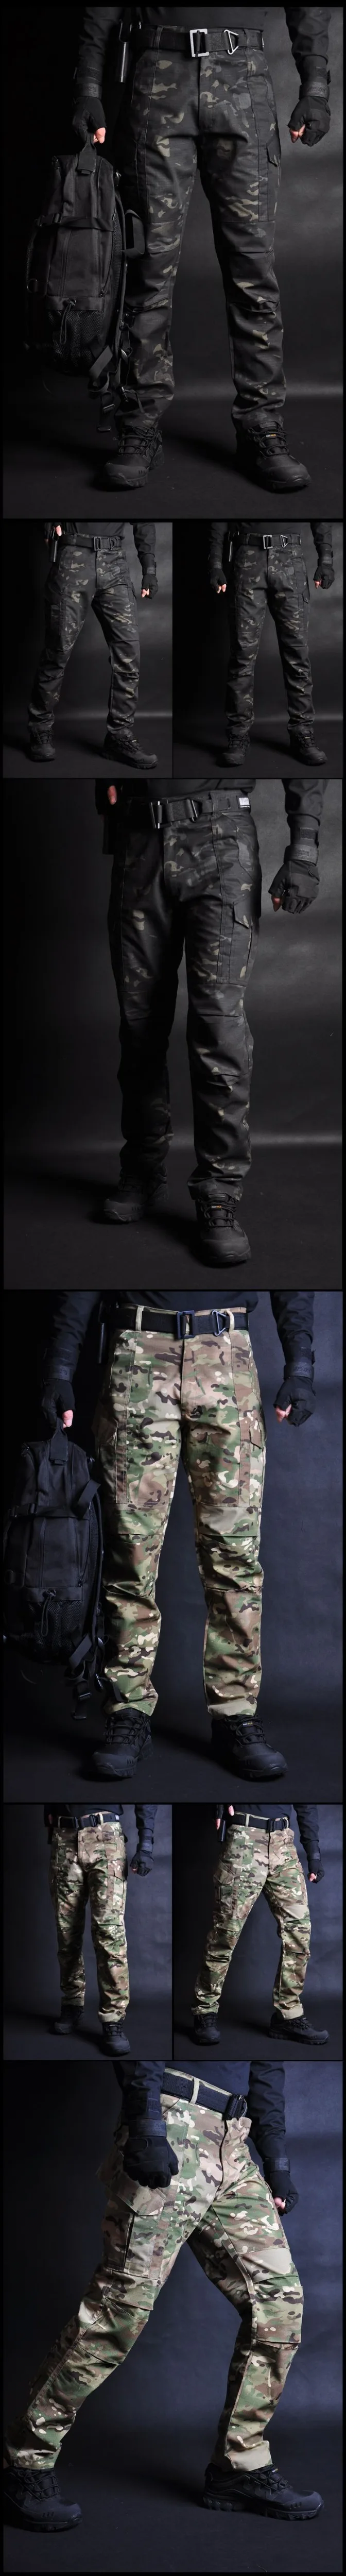 США Военная FG Боевая форма камуфляж тактический Ghillie костюм с длинным рукавом спортивная одежда охота страйкбол Пейнтбольная одежда